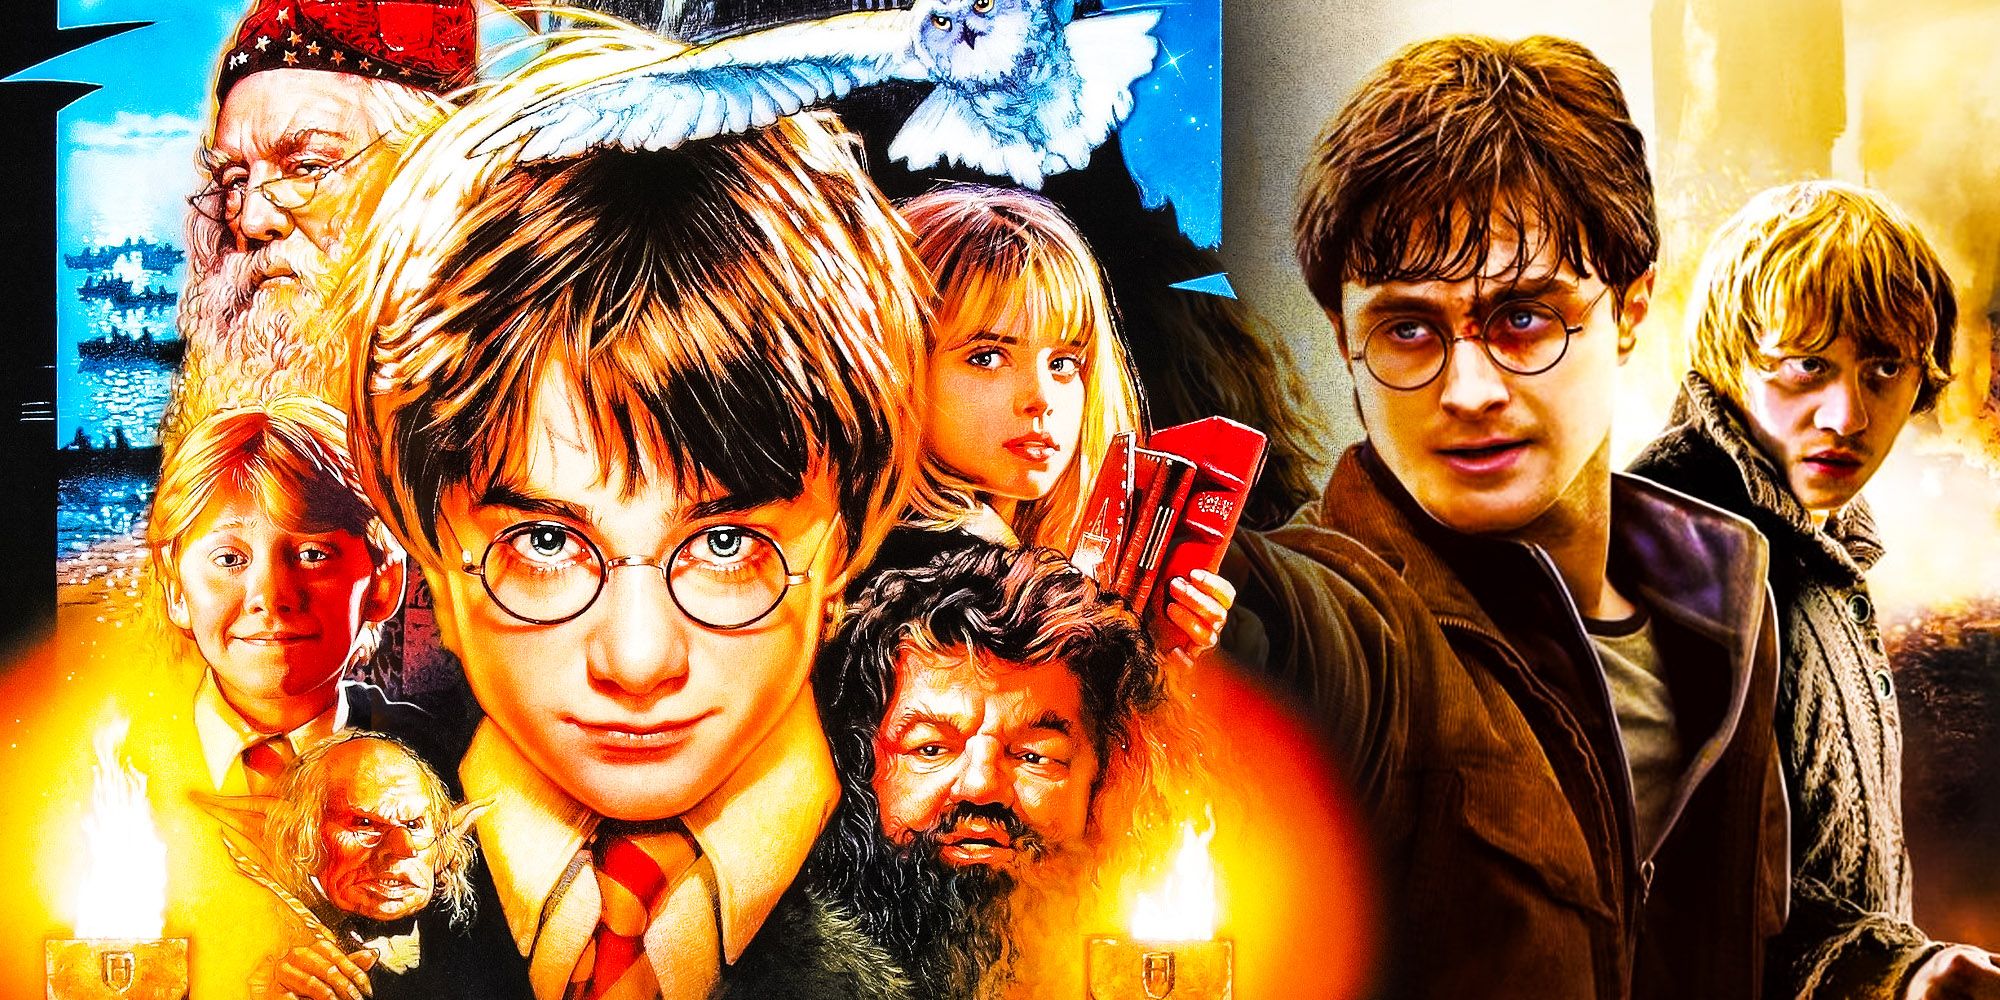 ¿Cómo cubrirá el show de Harry Potter 7 libros en 10 años?